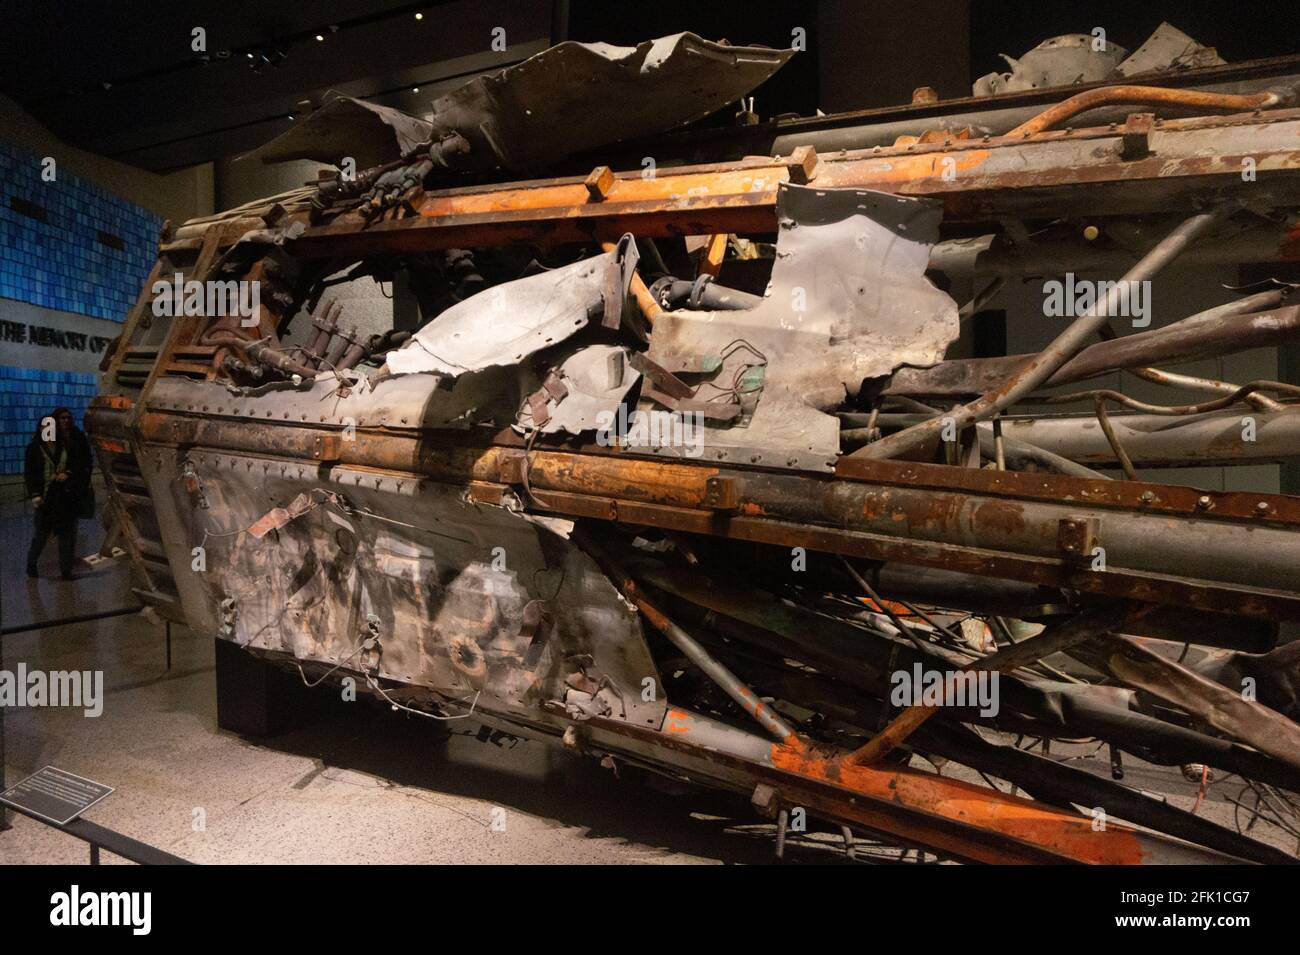 Septembre 11 ou 911 musée dans la ville de New York, Etats-Unis. Vue intérieure des écrans Banque D'Images